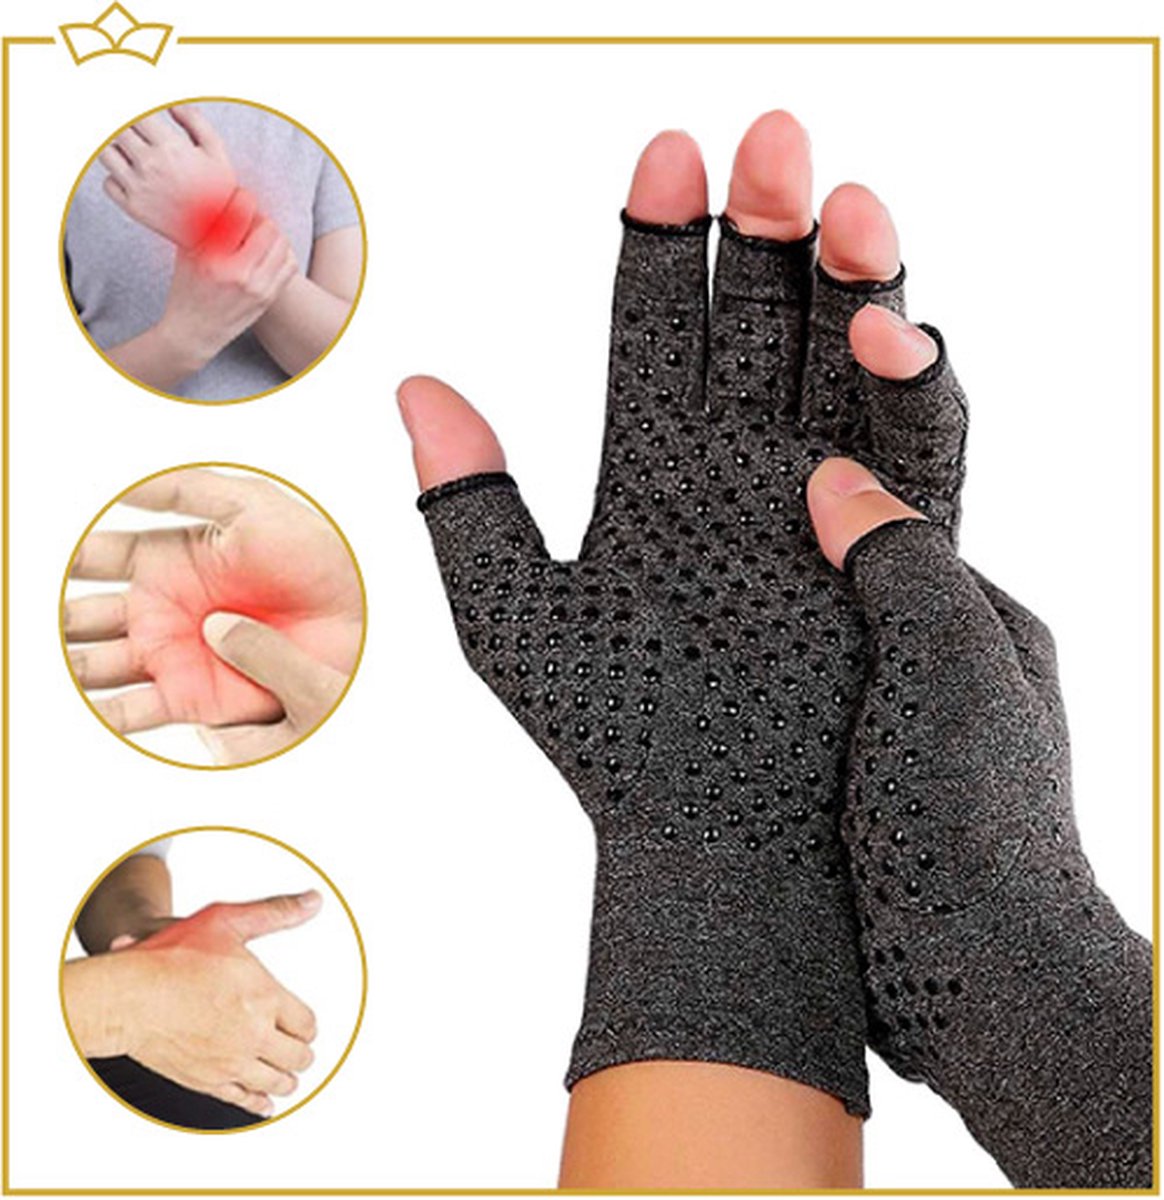 ATTREZZO® Compressie handschoenen - Grijs -Maat M - Anti slip - One size - Ideaal voor patiënten van Reuma - Artritis - Artrose